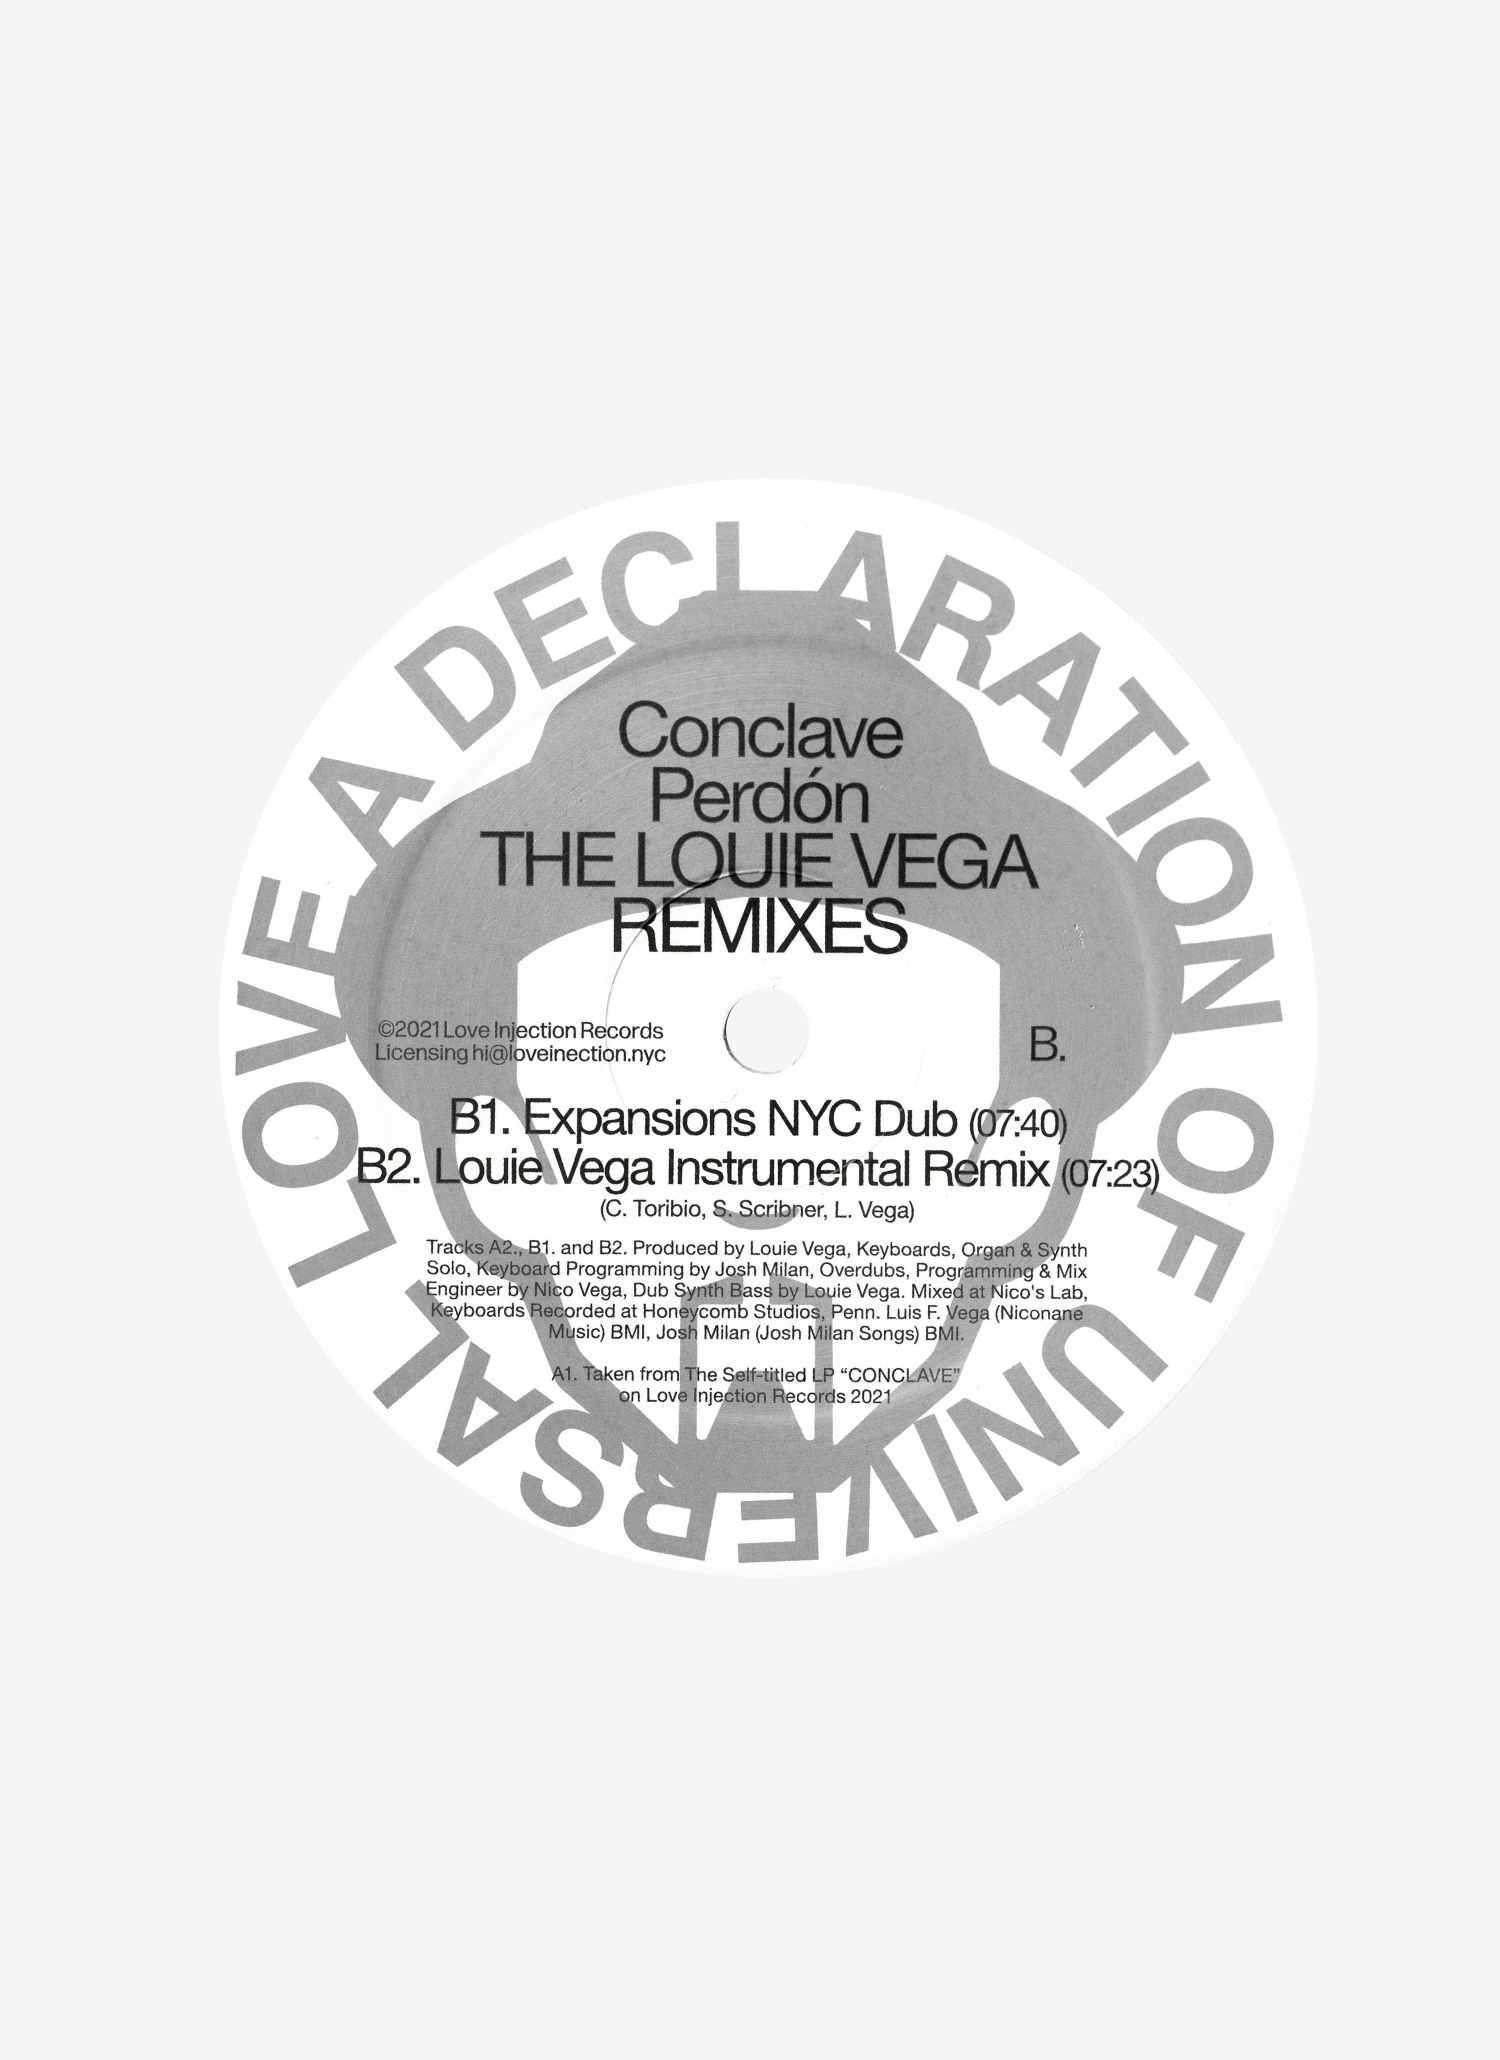 Conclave Perdon Louie Vega Remix 12 Inch Single